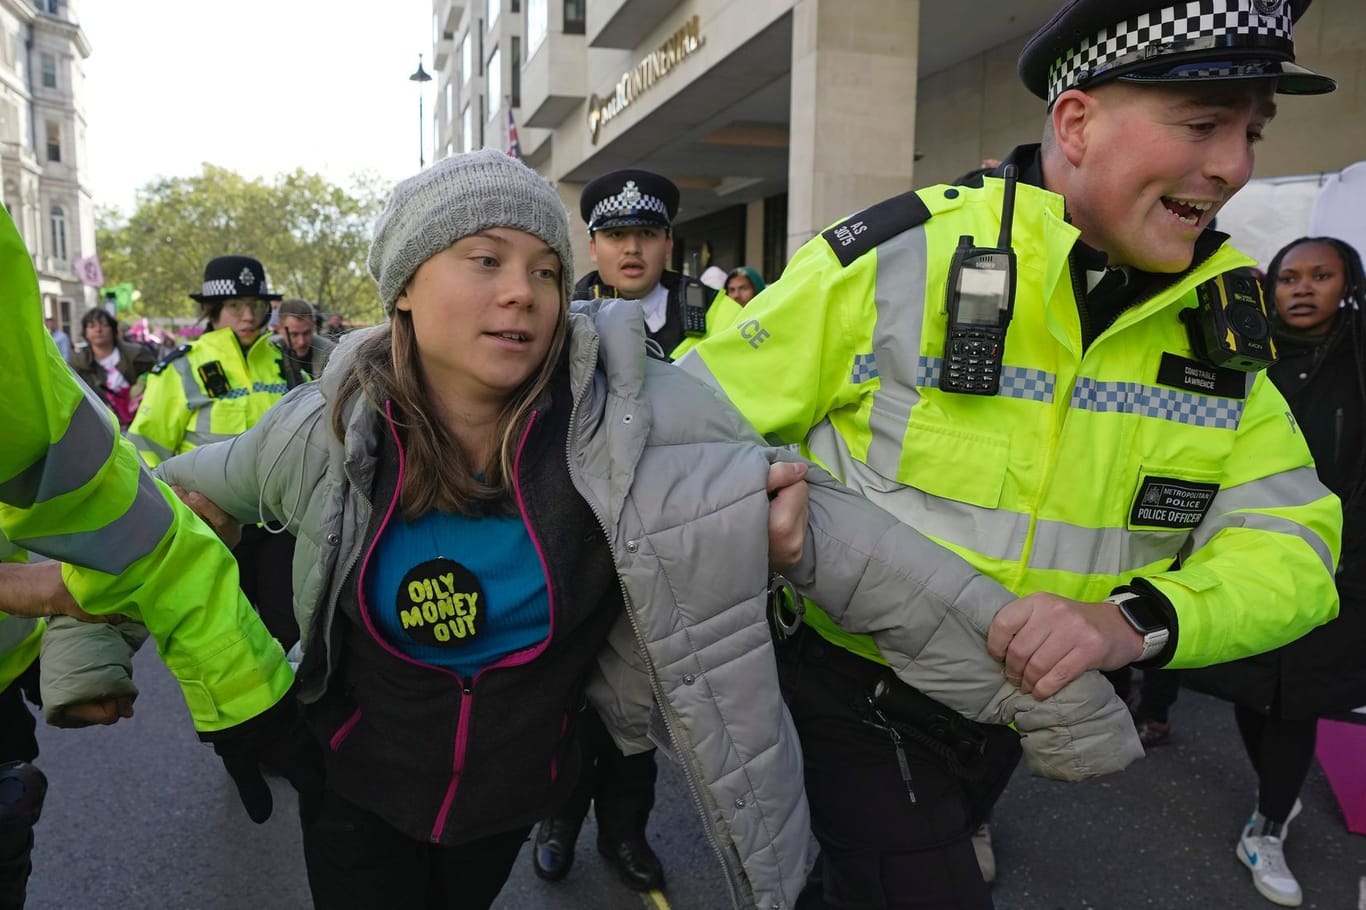 Festnahme von Greta Thunberg in London: Die schwedische Klimaaktivistin hatte gegen ein Treffen von Energiemanagern demonstriert und wird nun wegen Störung der öffentlichen Ordnung angeklagt.